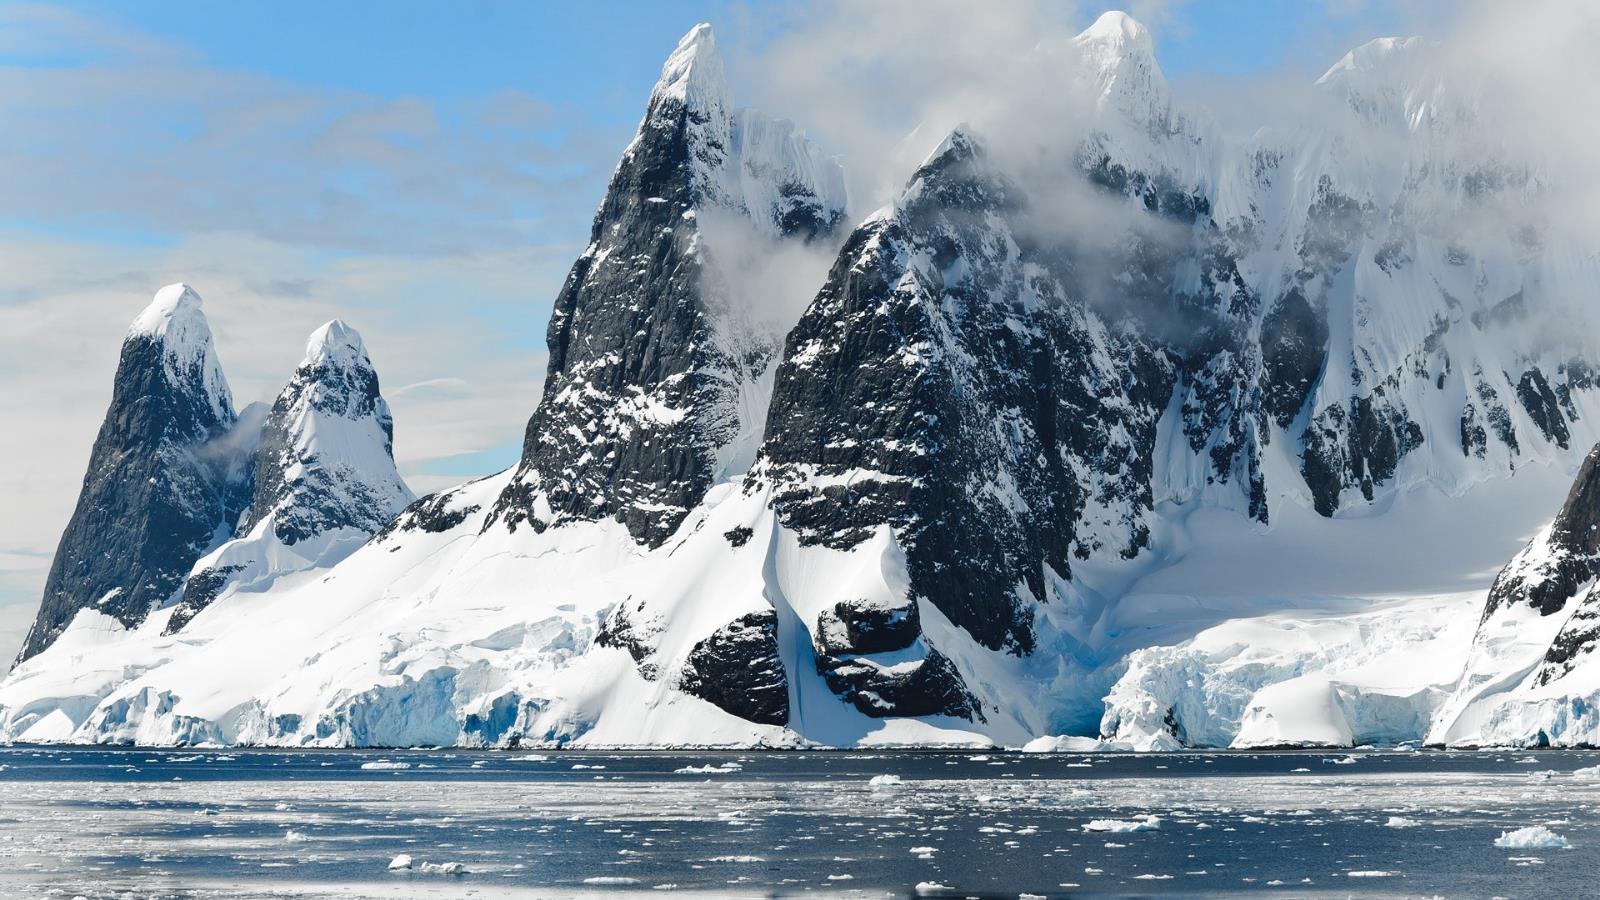  تفقد الكتلة الجليدية لغرينلاند سنويا 244 مليار طن من الجليد (بيكسلز)